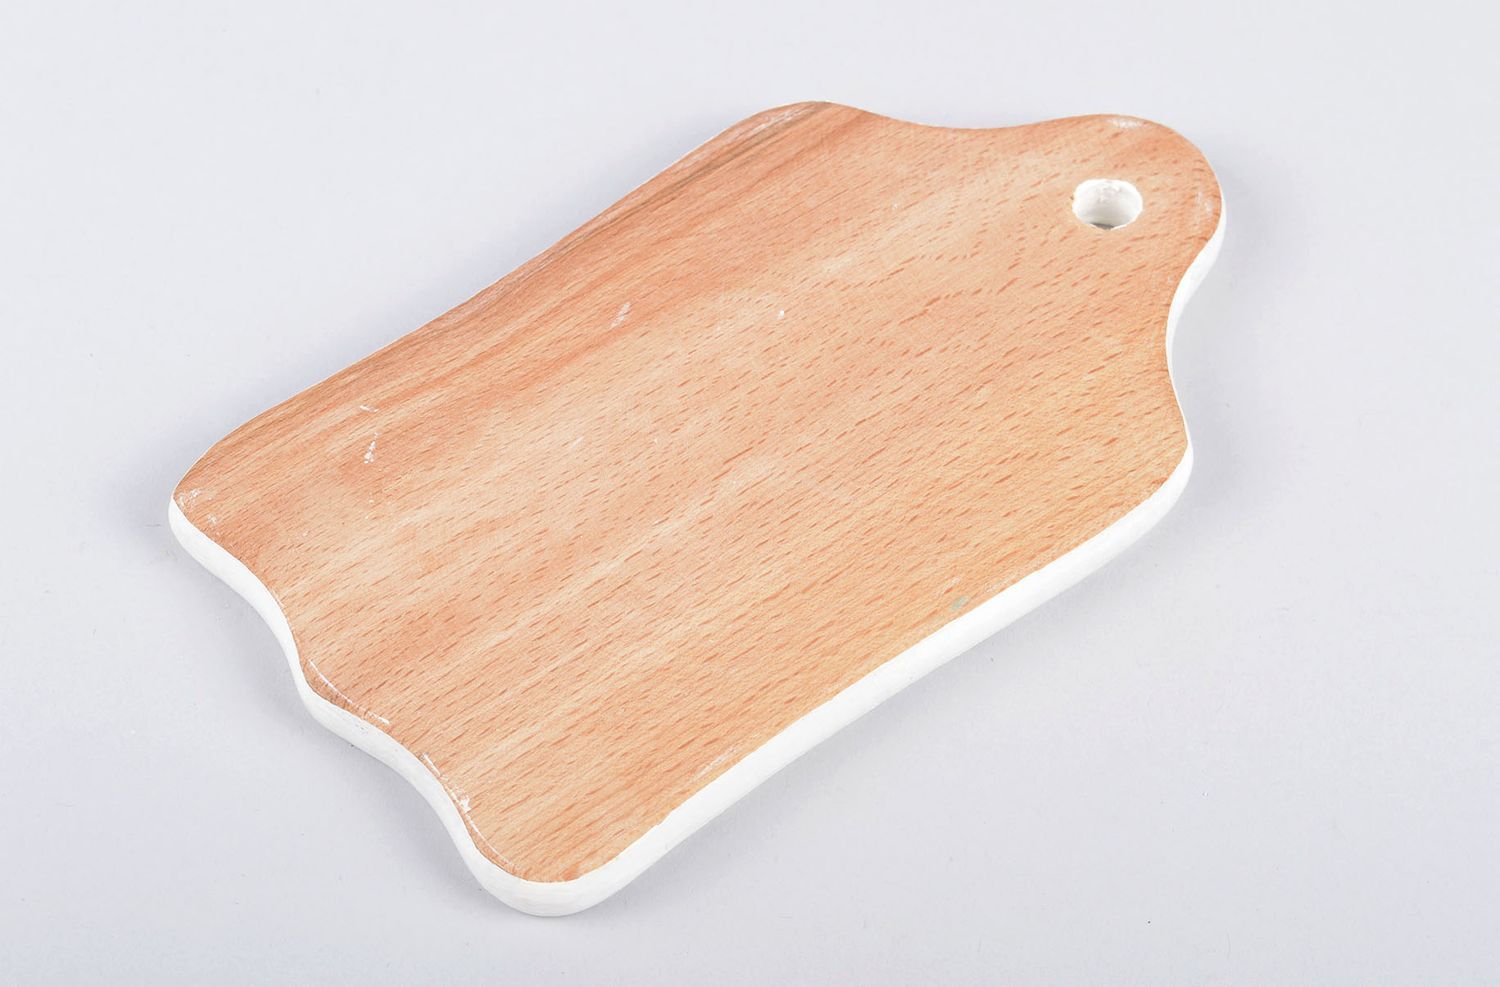 Handmade kitchen decor wooden chopping board cutting board for decorative use  photo 2